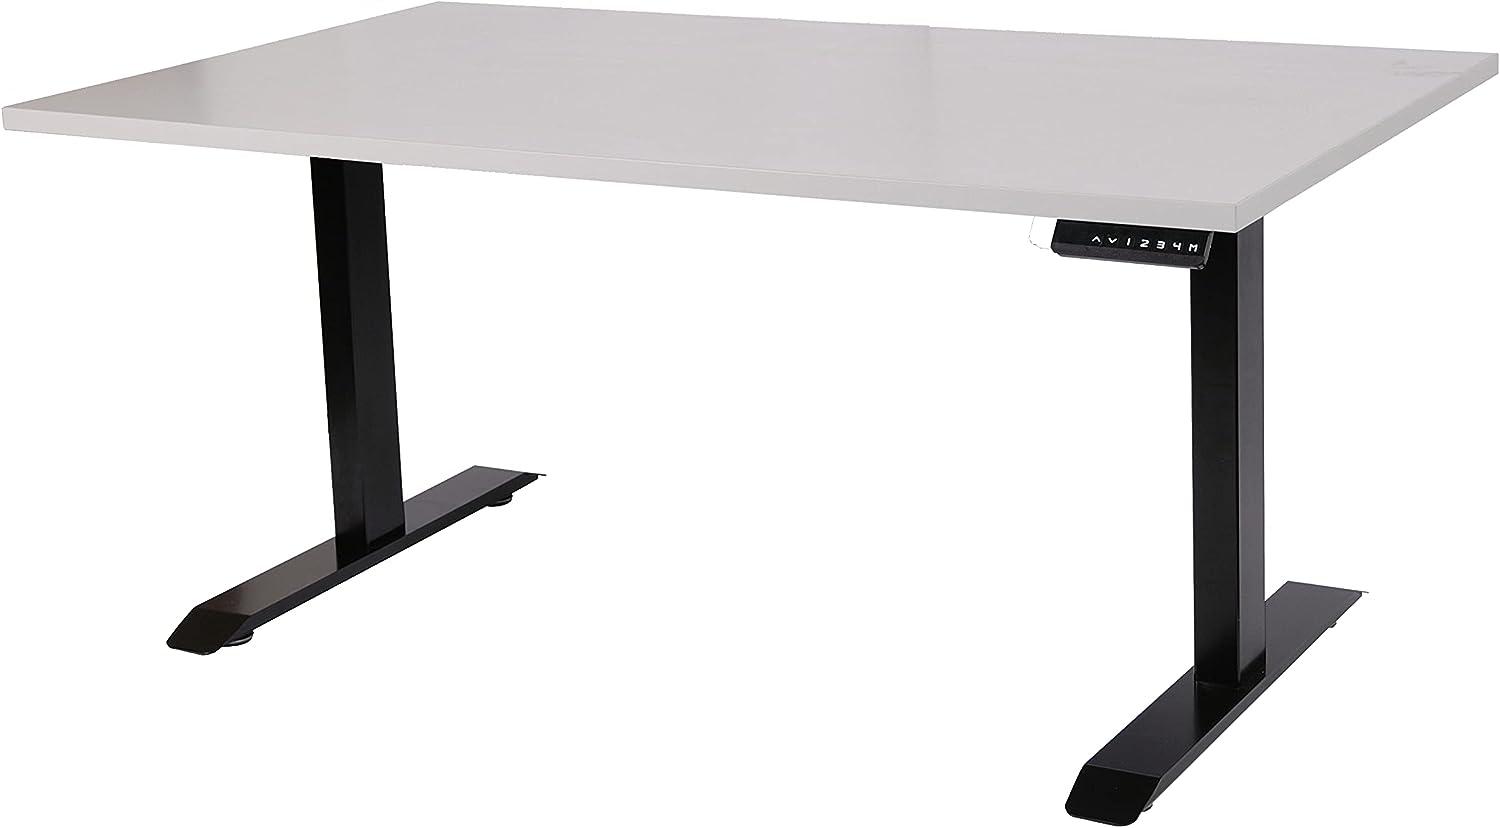 Szagato Schreibtisch stufenlos elektrisch höhenverstellbar BxTxH: 180x80x(64,5-129,5) cm schwarz, mit Memory-Funktion inkl. Tischplatte Stärke 2,5 cm (Stischgestell, Steh-Sitz Tisch) Bild 1